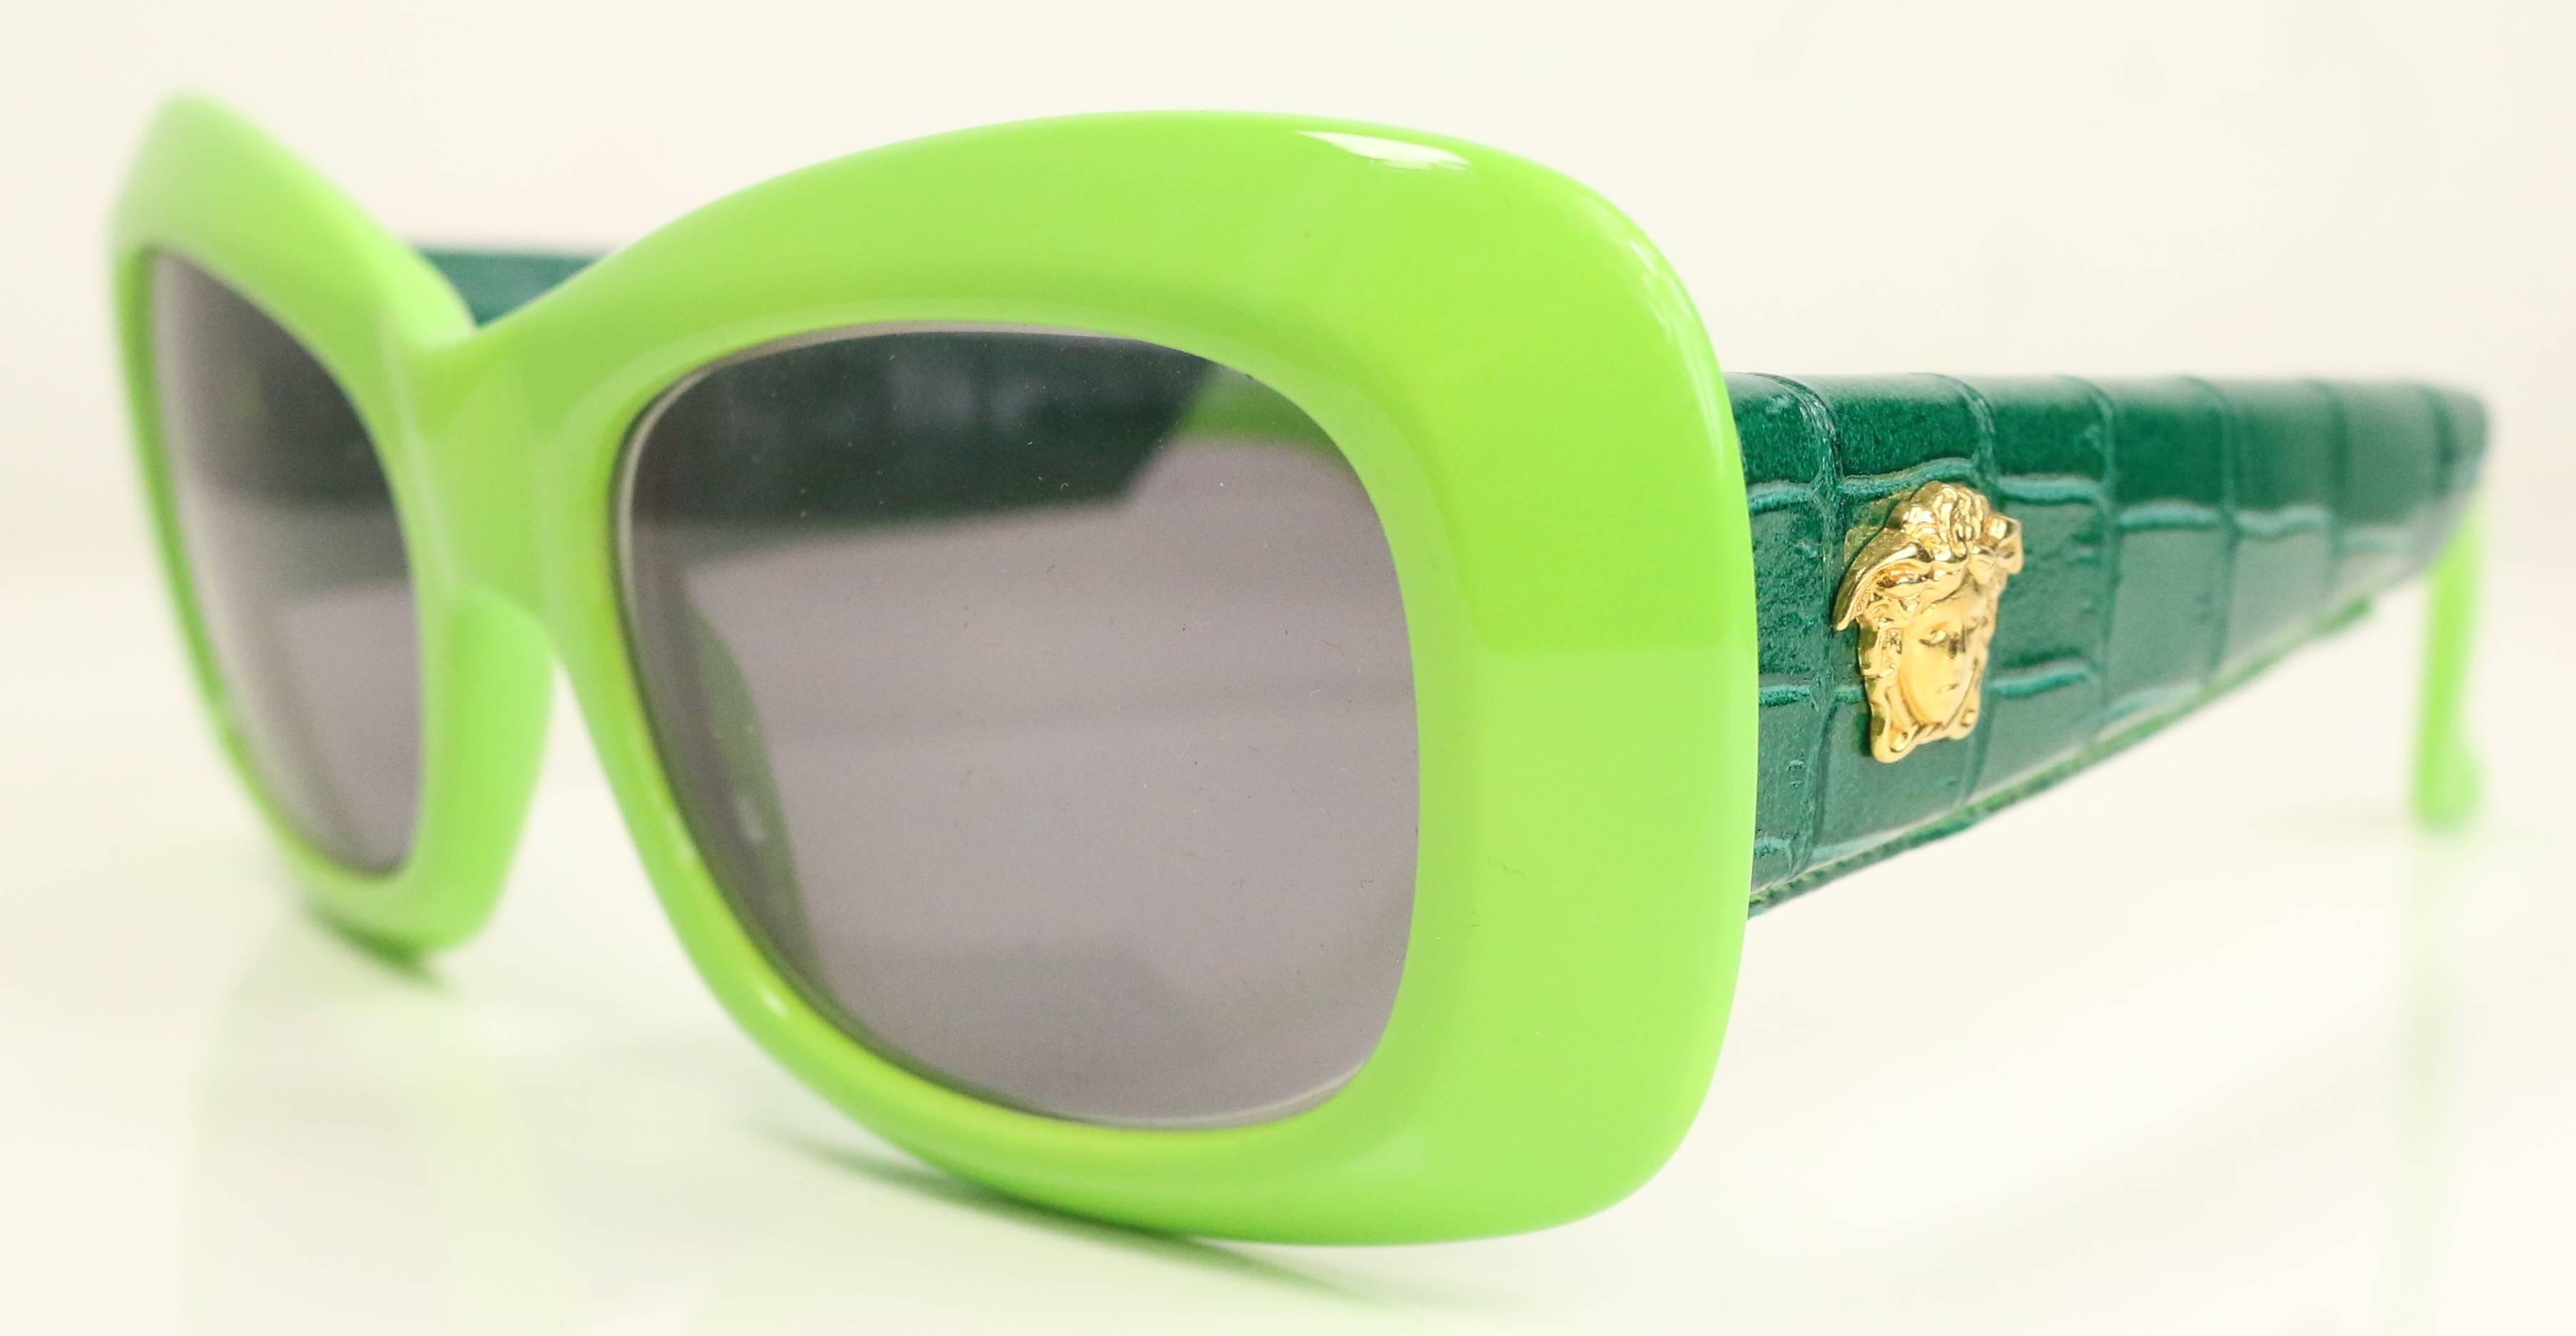 - Vintage 90s Gianni Versace Sonnenbrille aus grünem Krokoleder mit goldener Medusa an der Seite. Die Modellnummer ist 417 und die Farbe ist 930.  

- Die Gläser sind verschreibungspflichtig.    

- Hergestellt in Italien.

